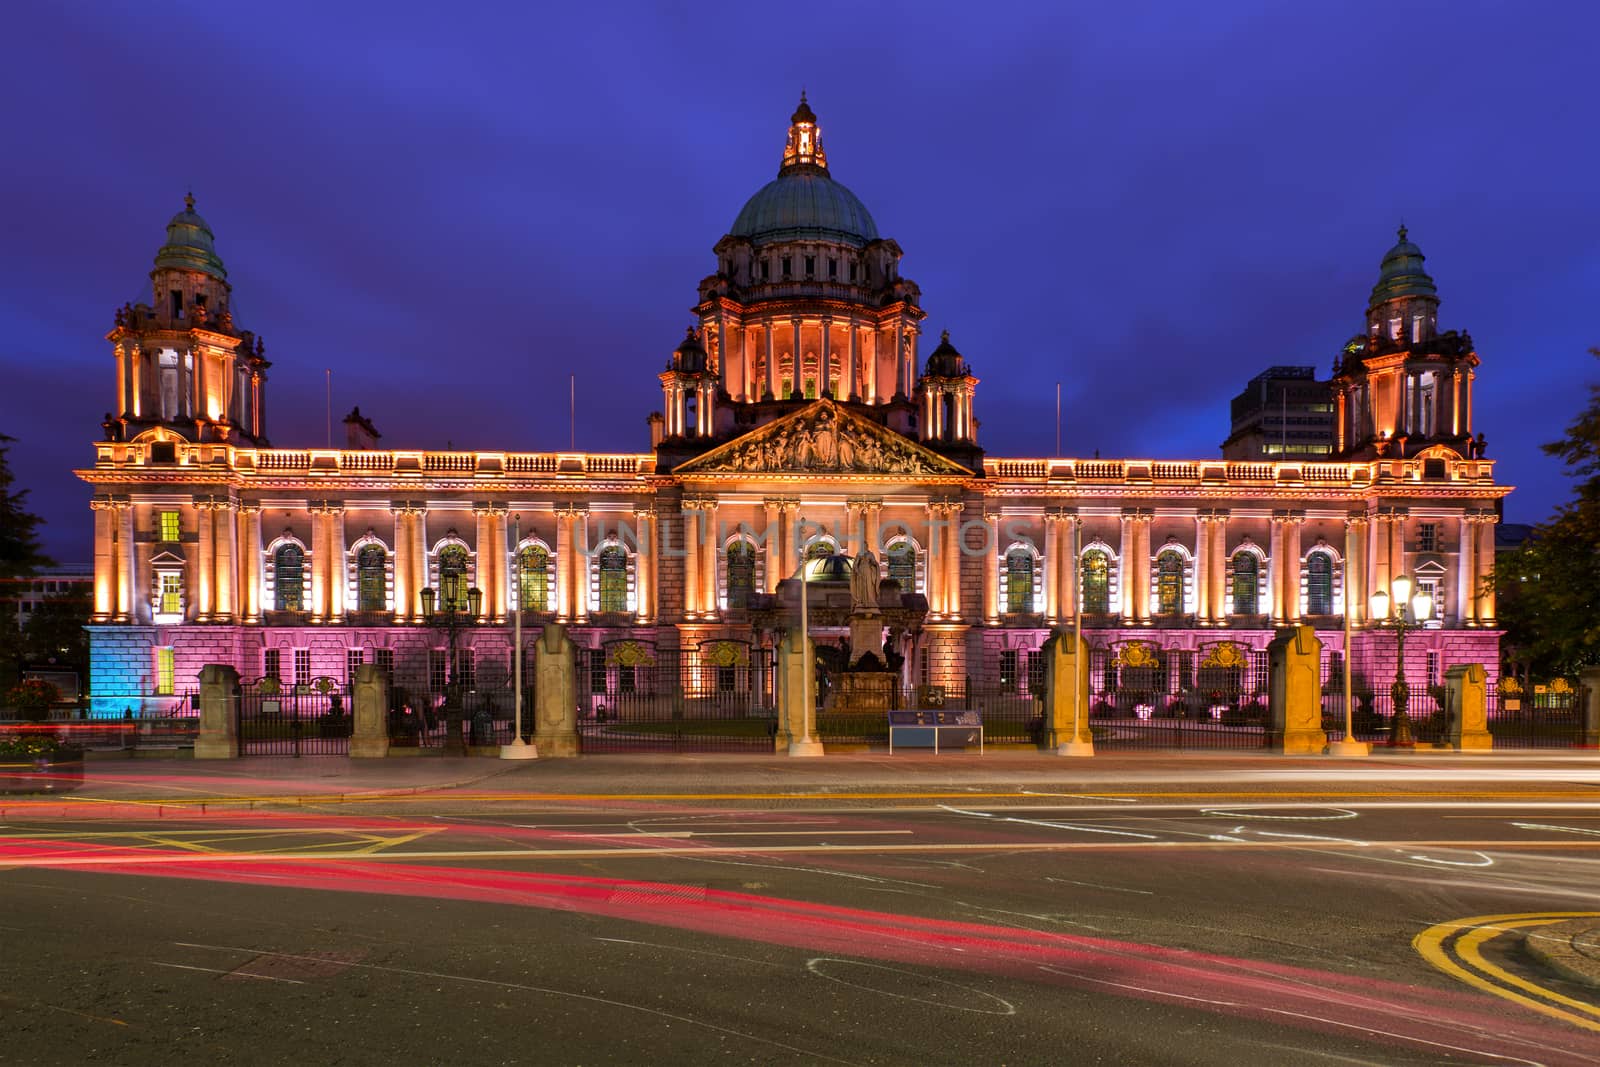 Illuminated Belfast City Hall, Belfast, Northern Ireland by zhu_zhu